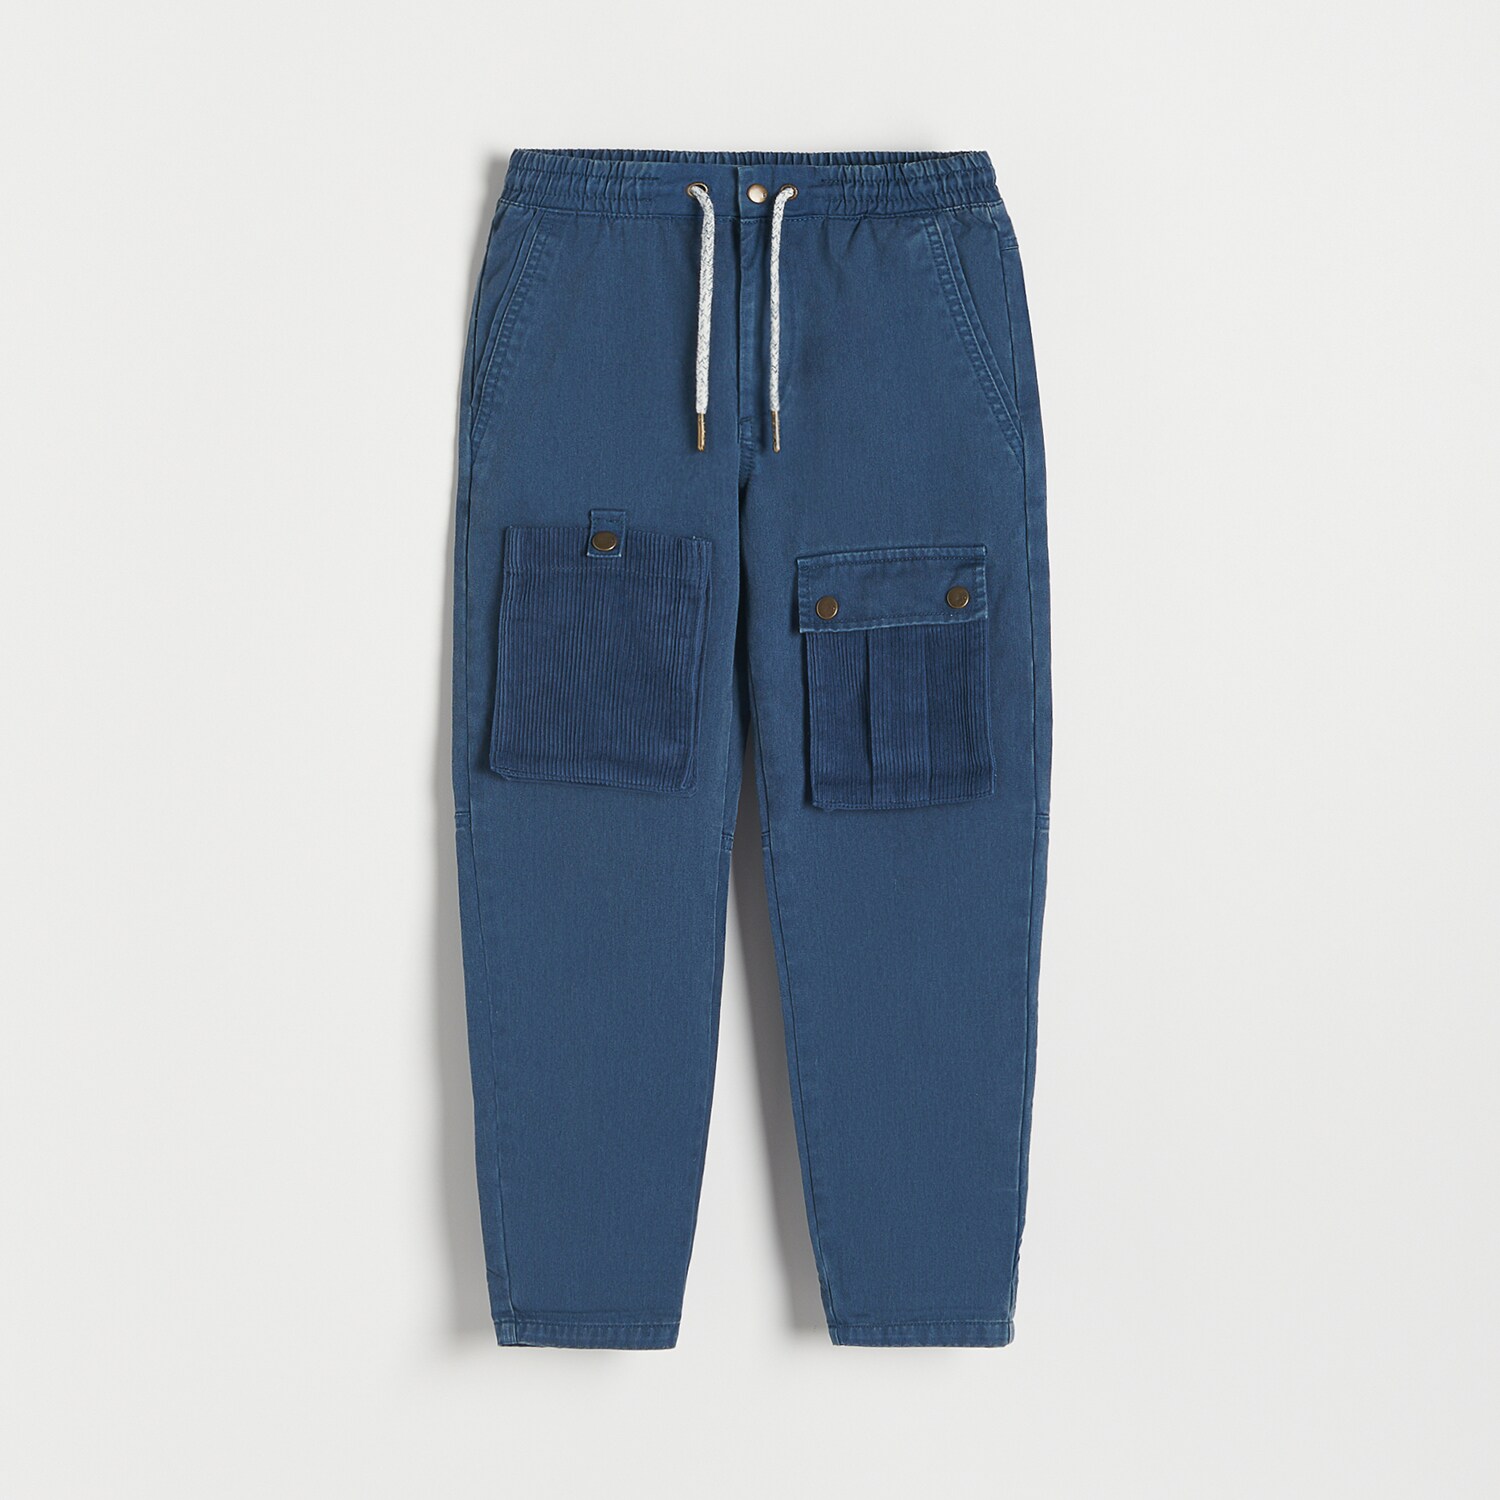 Reserved – Pantaloni din stofă cu buzunare – Bleumarin Bleumarin imagine noua gjx.ro